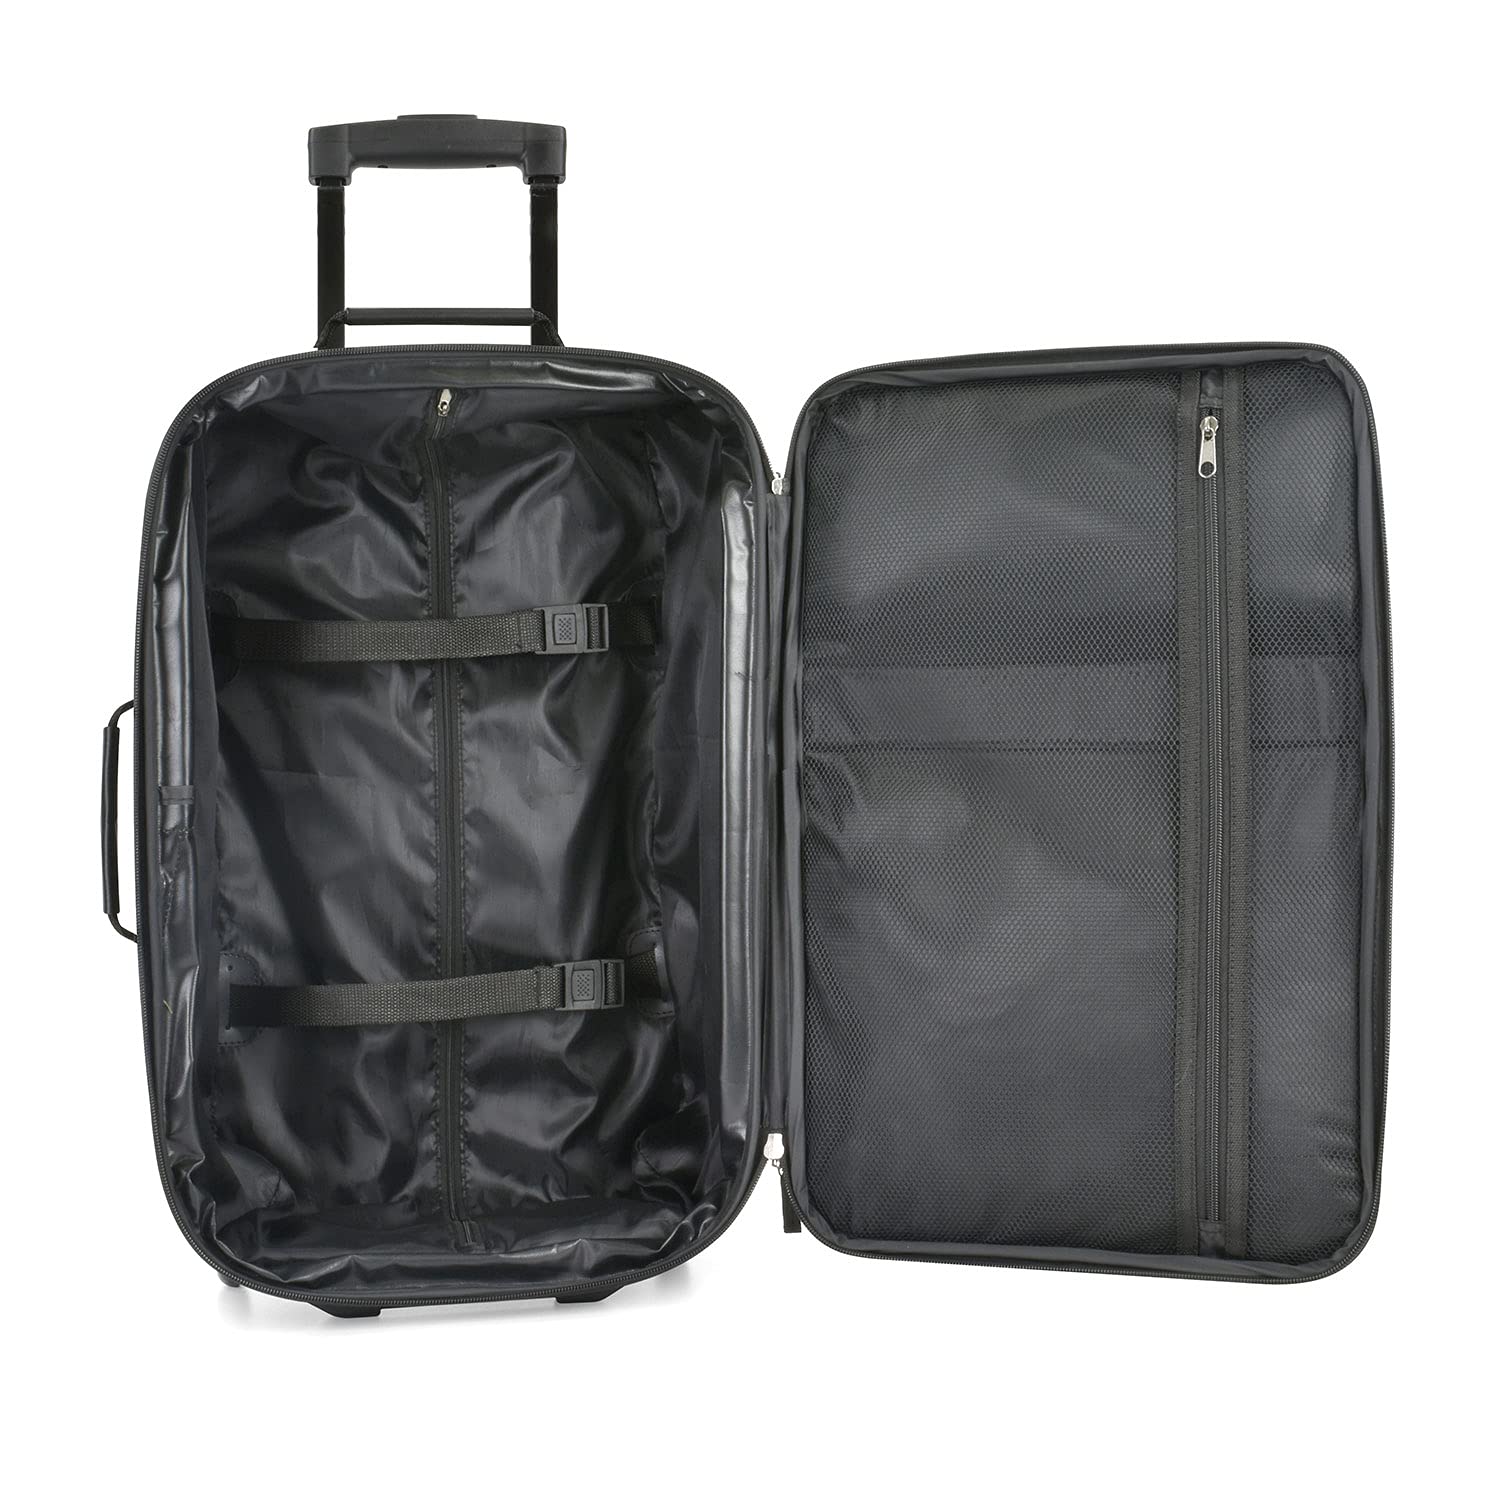 U.S. Traveler Rio Rugged Fabric Expandable Carry-on Luggage Set, Black, 2 Wheel, Set of 2